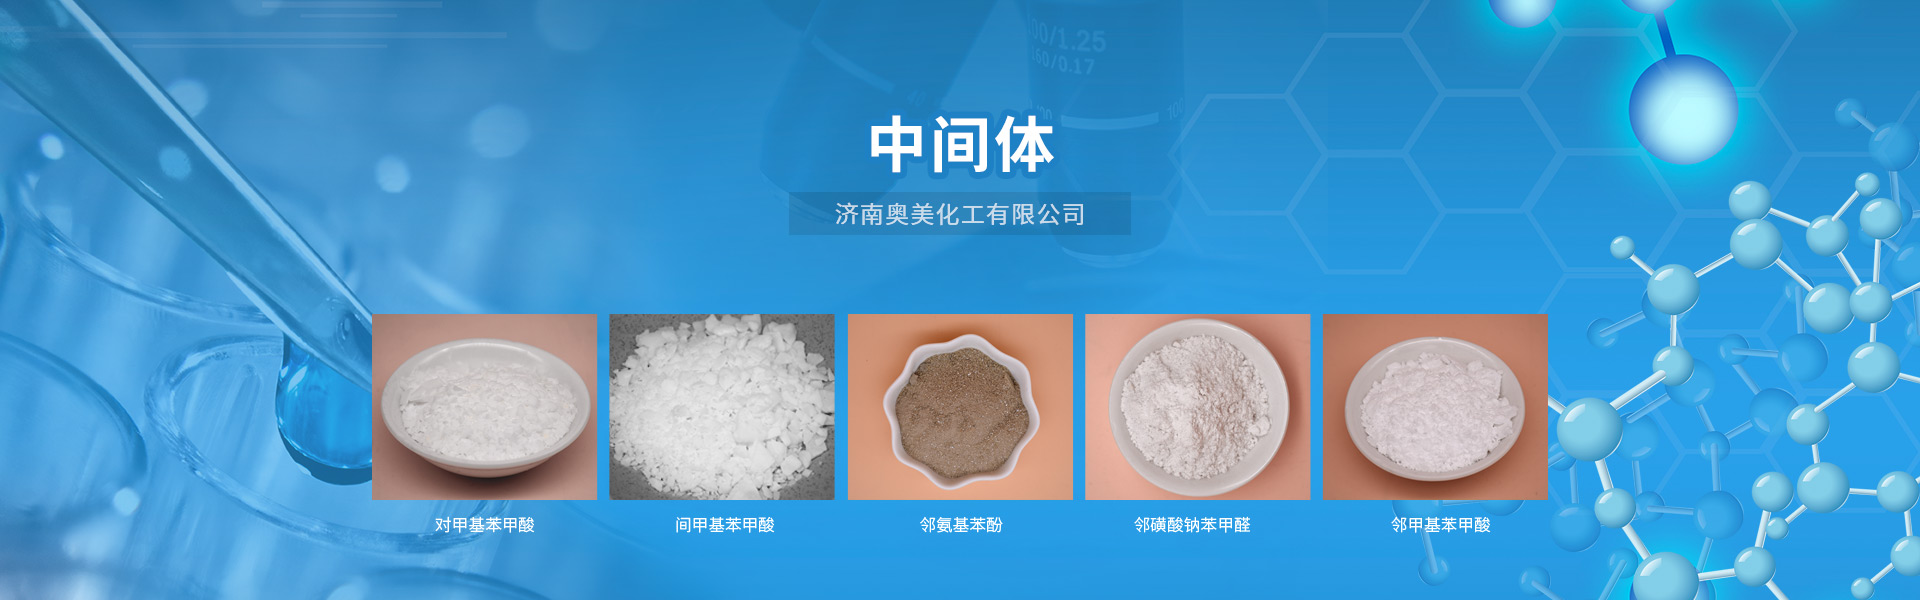 增白剂、荧光增白剂OB-1、洗涤增白剂、塑料增白剂、荧光增白剂